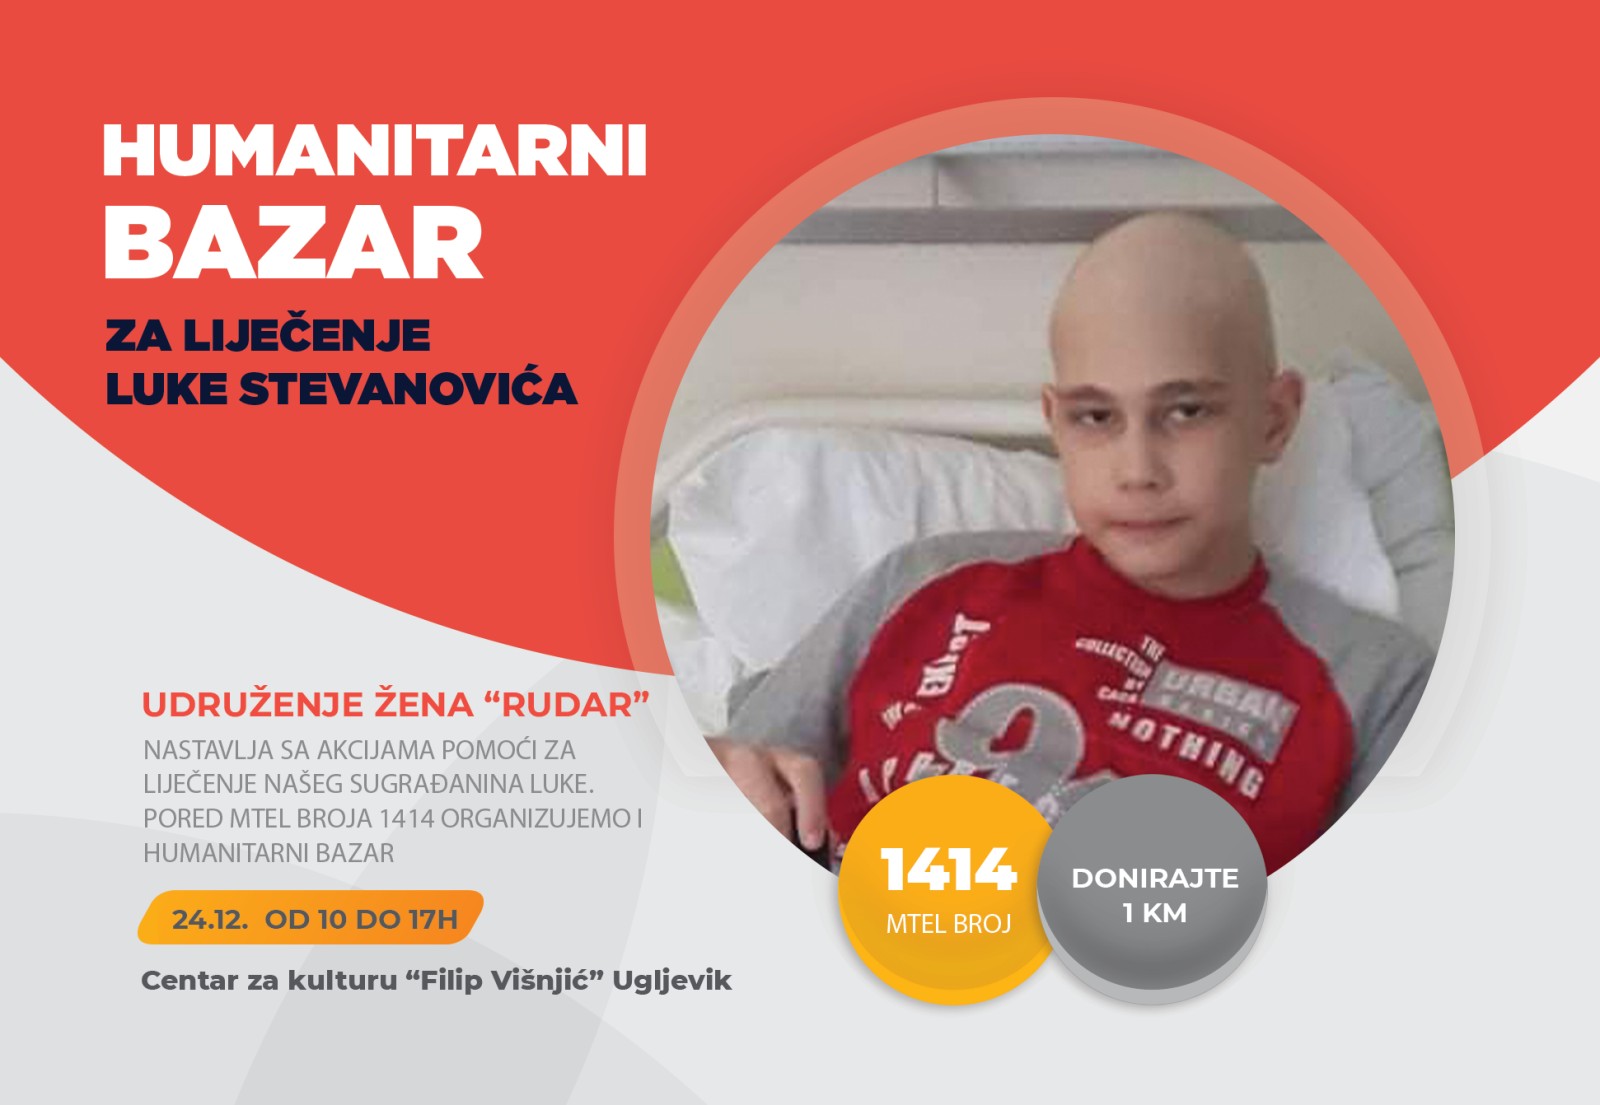 Ugljevik: Humanitarni bazar za Luku Stevanovića 24. decembra